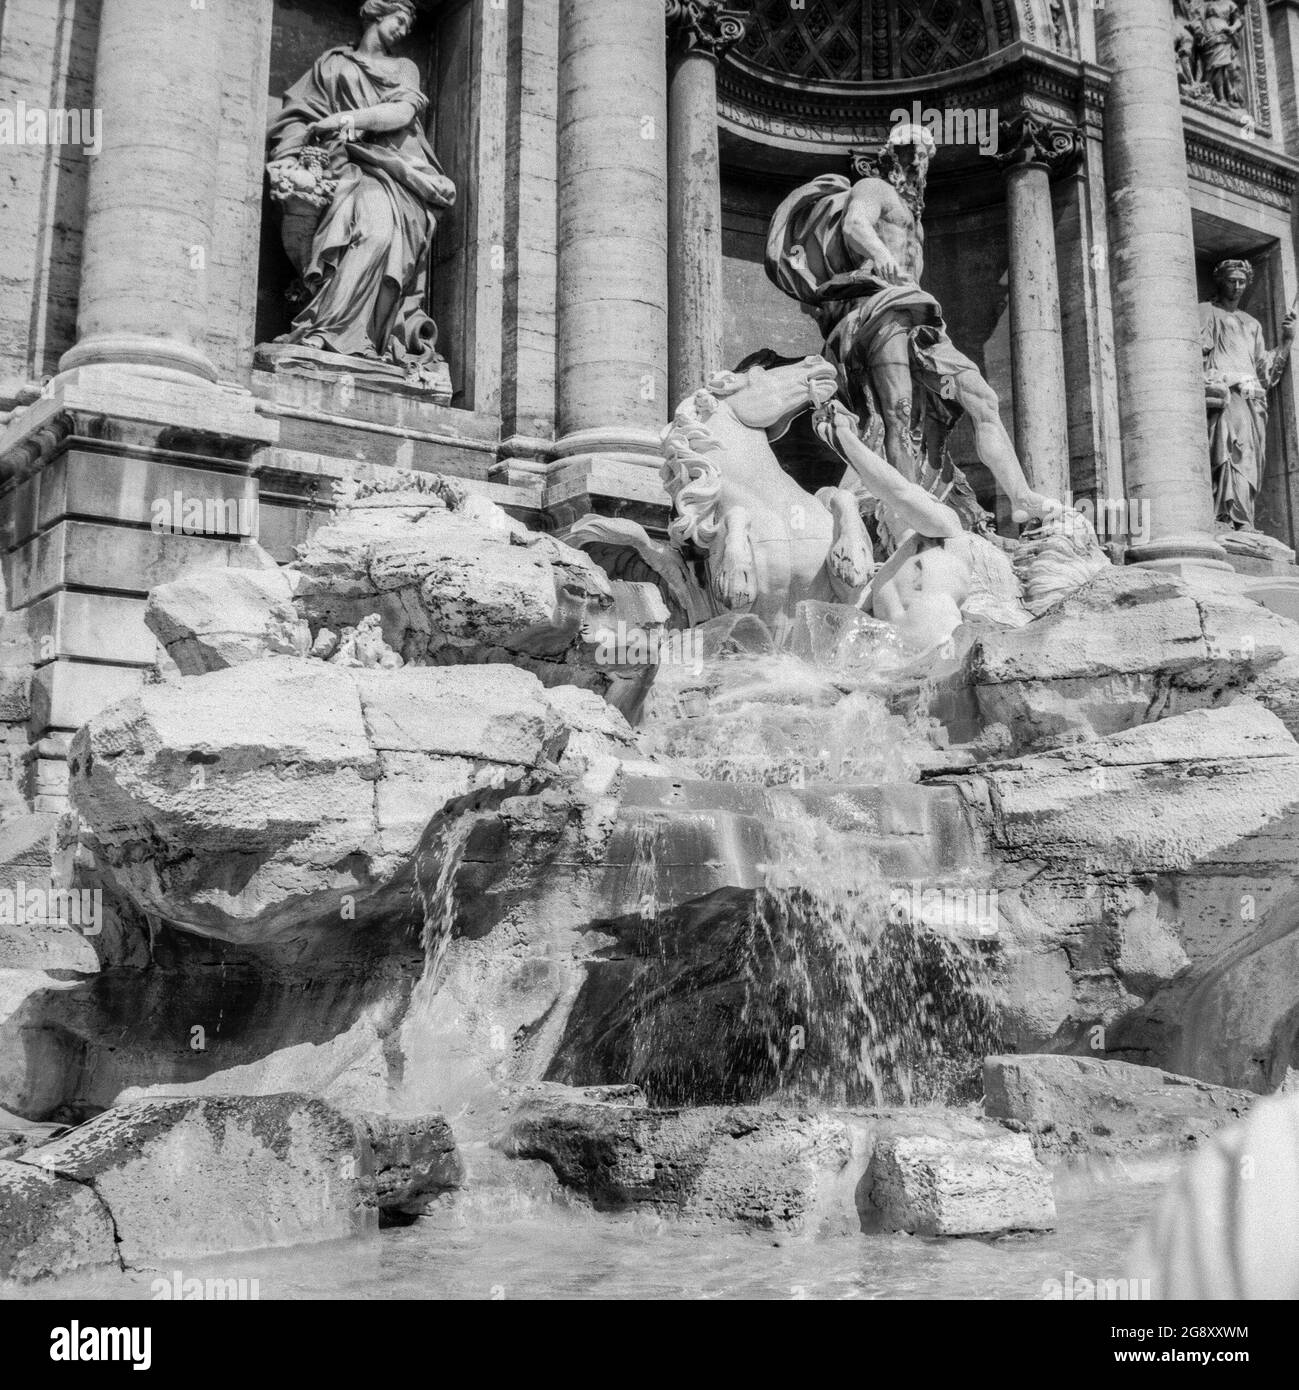 Rome, 1972: Détail du côté gauche de la célèbre fontaine de Trevi, rendu célèbre dans le film de Fellini 'la dolce vita', avec la scène de salle de bains de l'actrice Anita Ekberg Banque D'Images